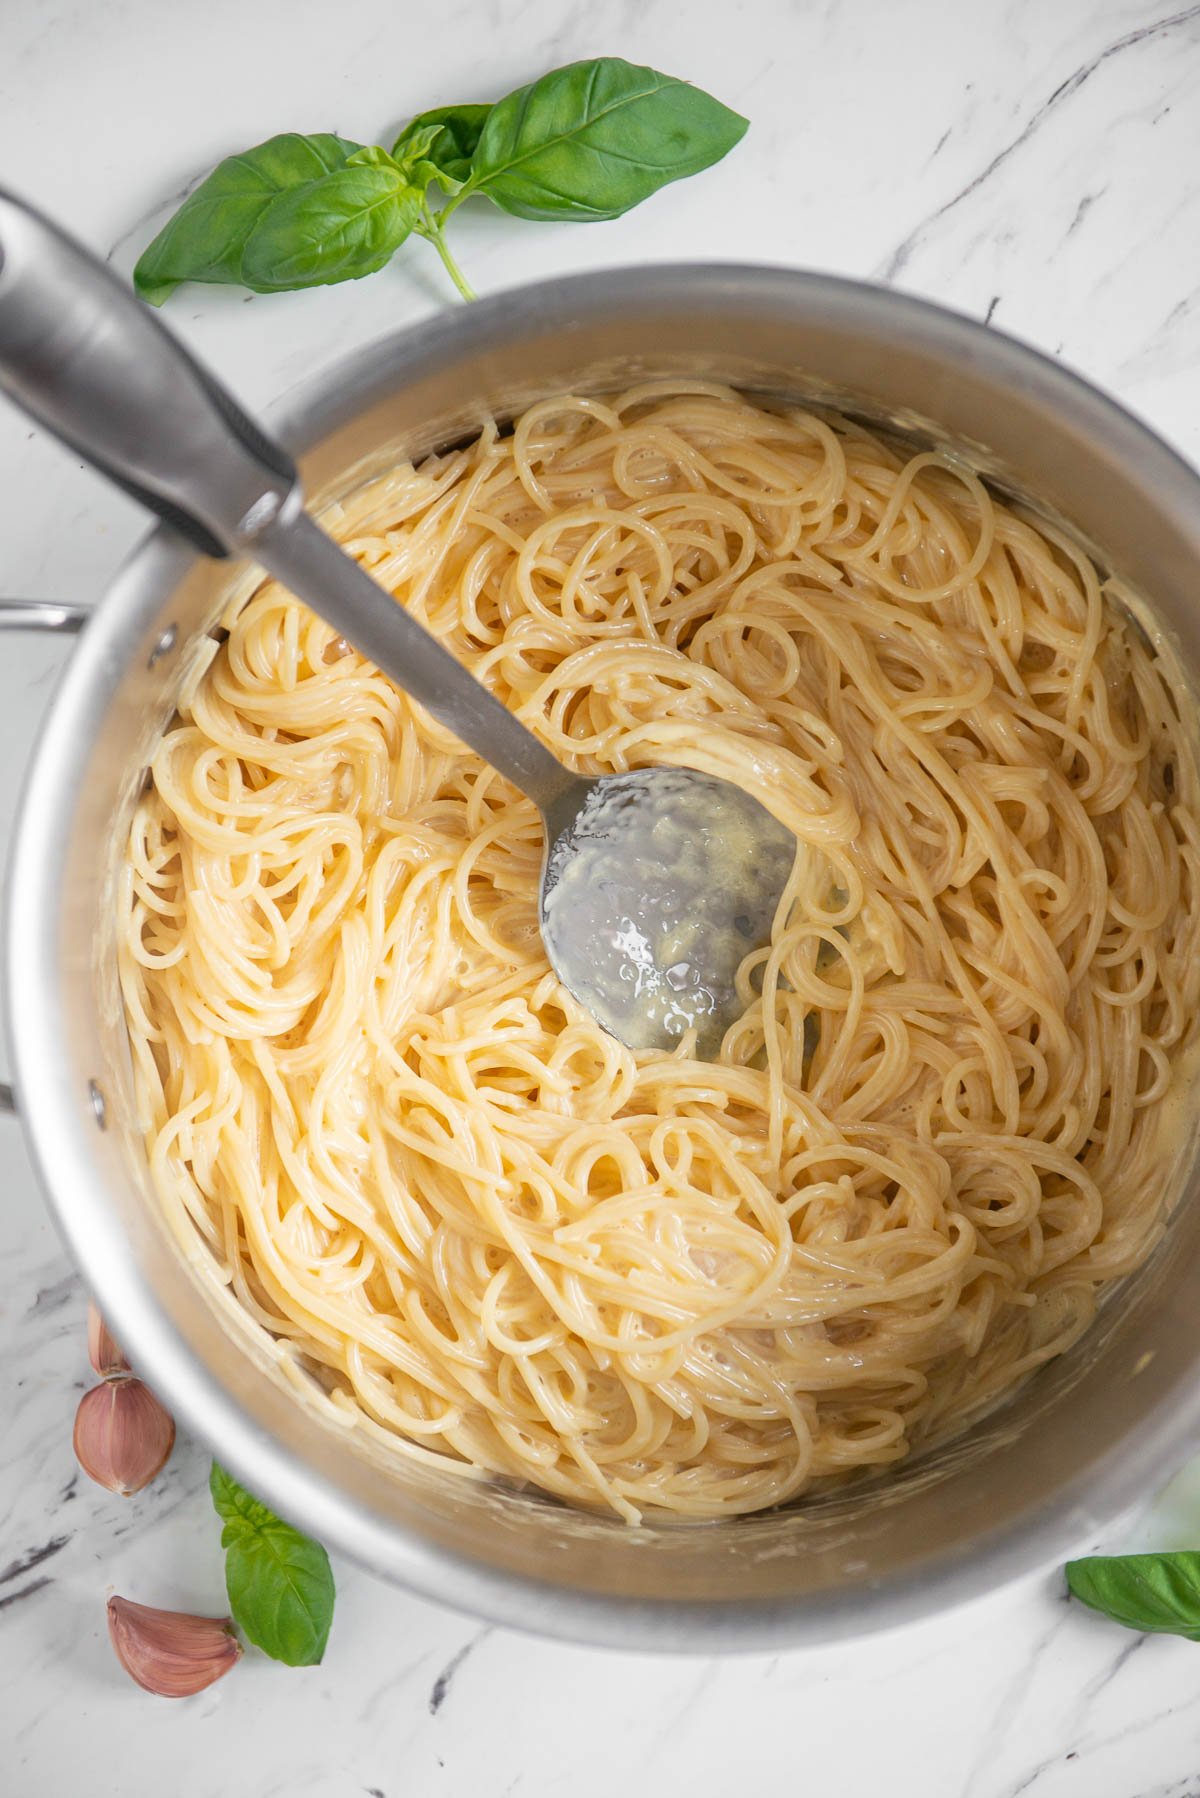 spaghetti with carbonara sauce.